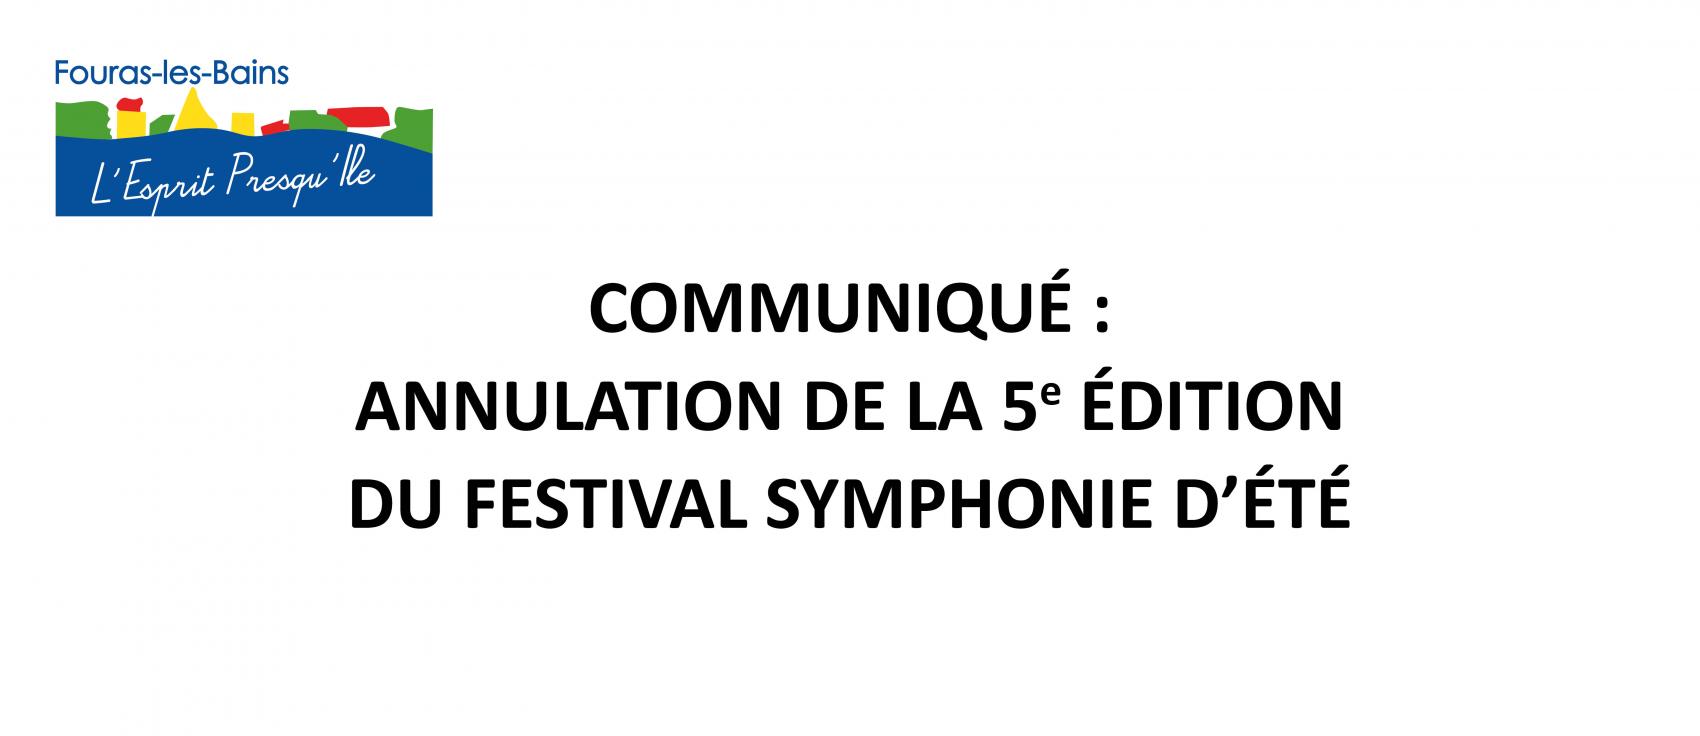 COMMUNIQUÉ - ANNULATION DE LA 5e ÉDITION DU FESTIVAL SYMPHONIE D’ÉTÉ